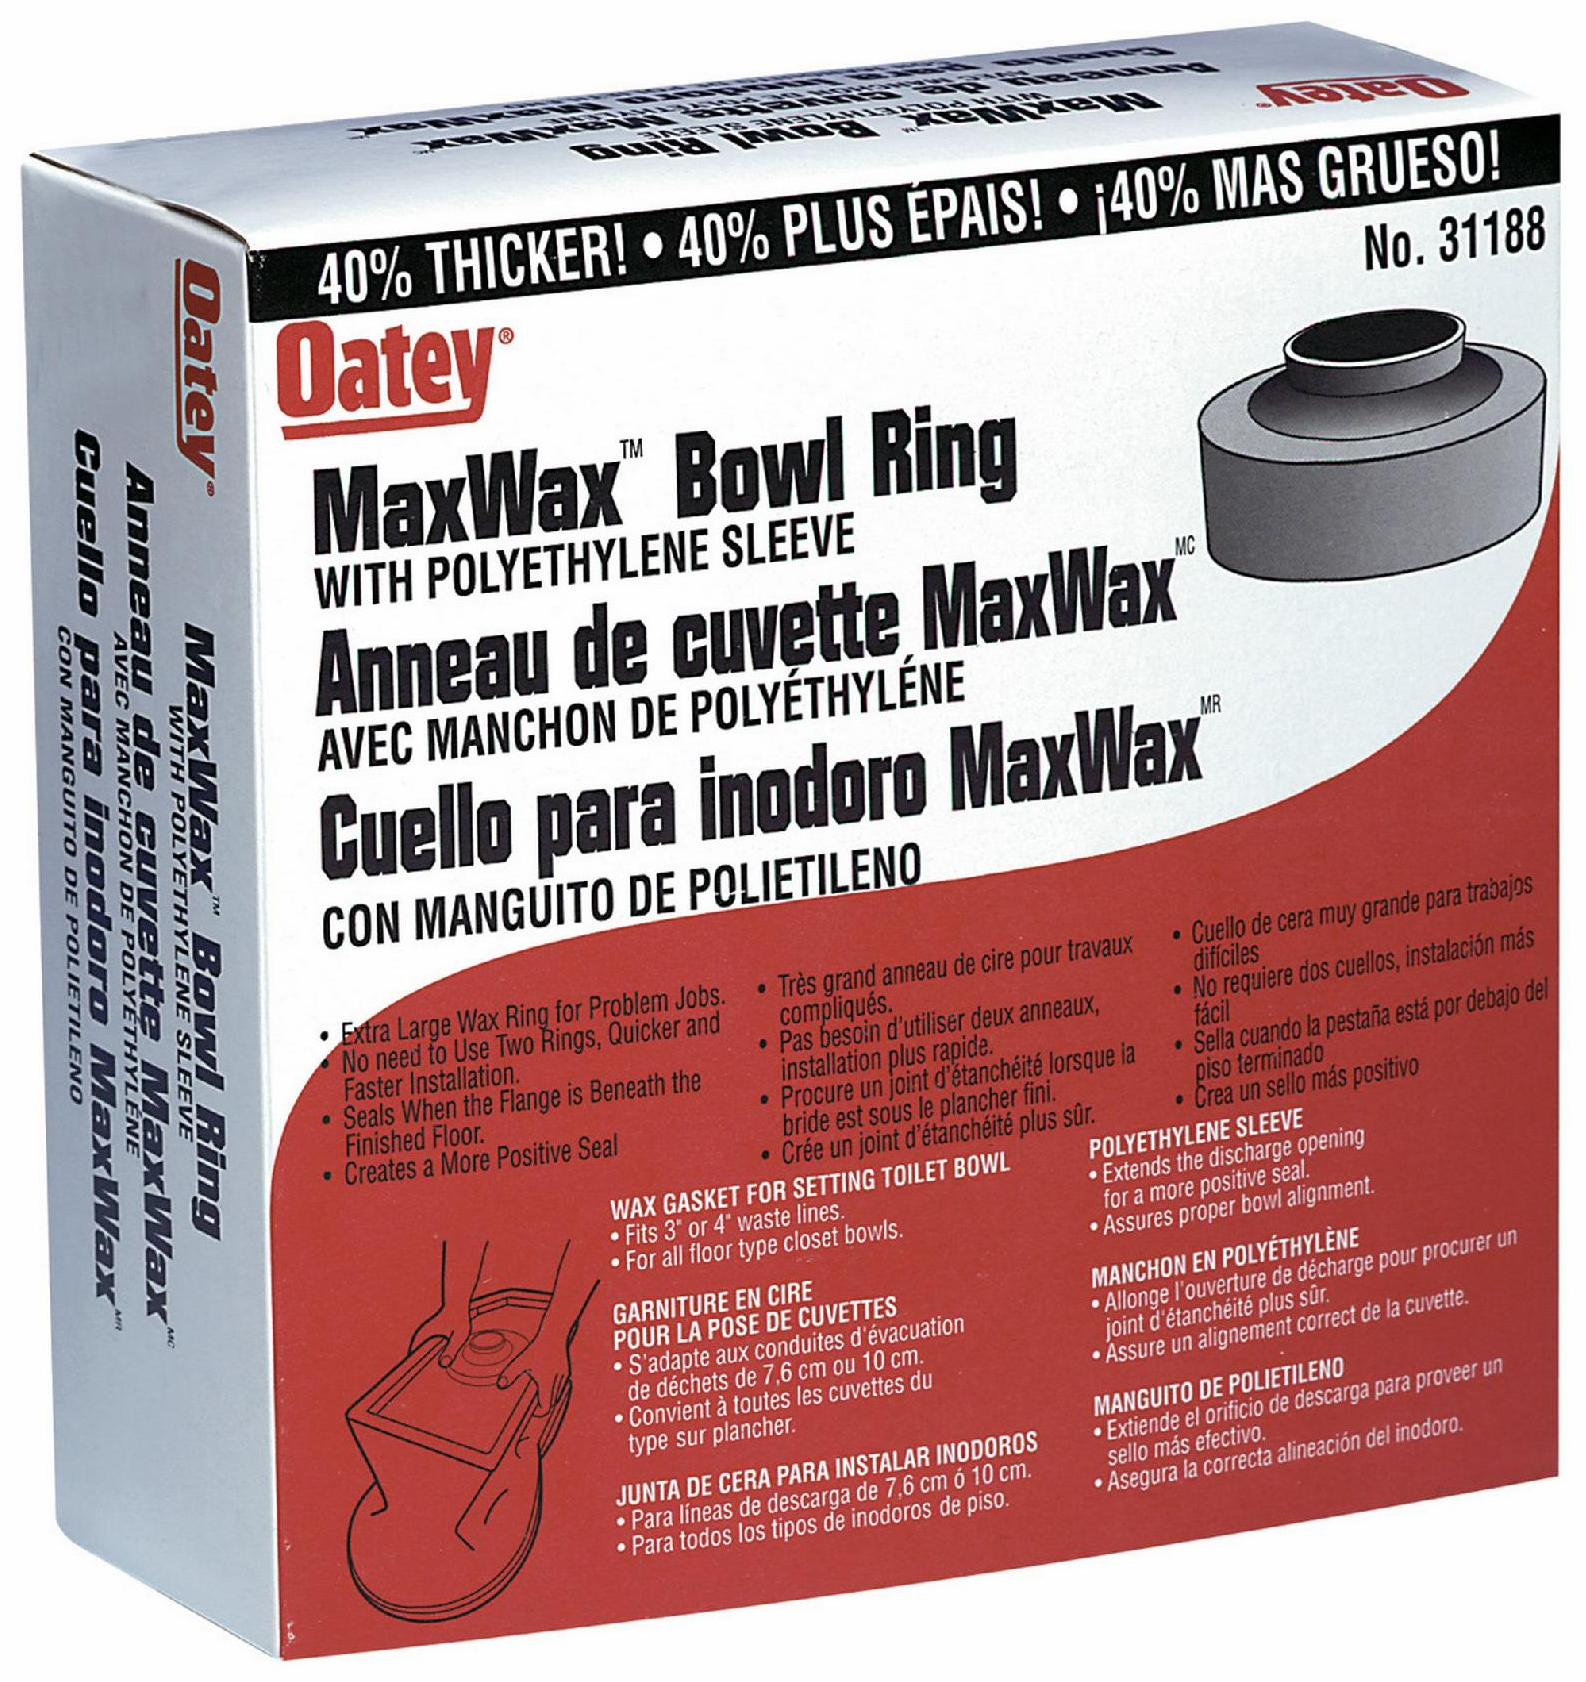 Oatey 101: Wax Rings